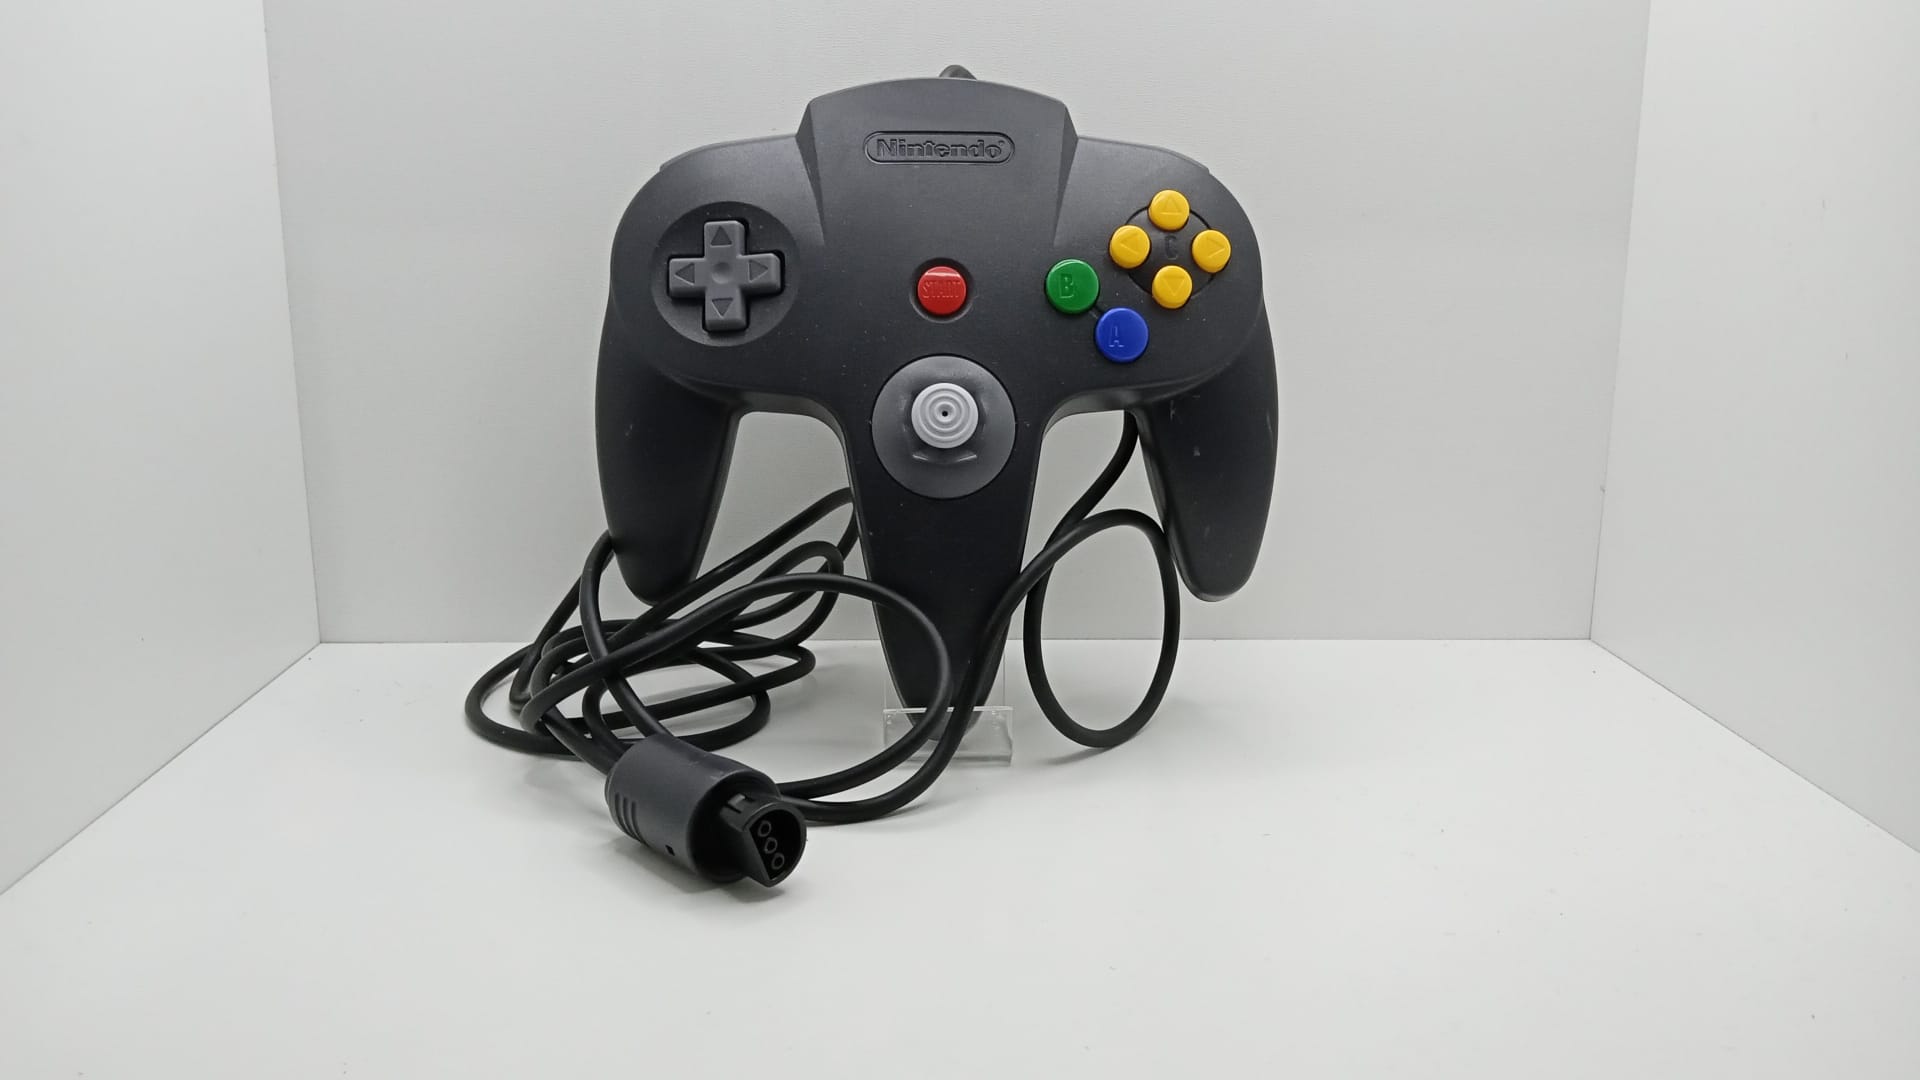 χειριστήριο  Nintendo 64 - Nintendo® - Black  - καθαρίστηκε και ανακαινίστηκε